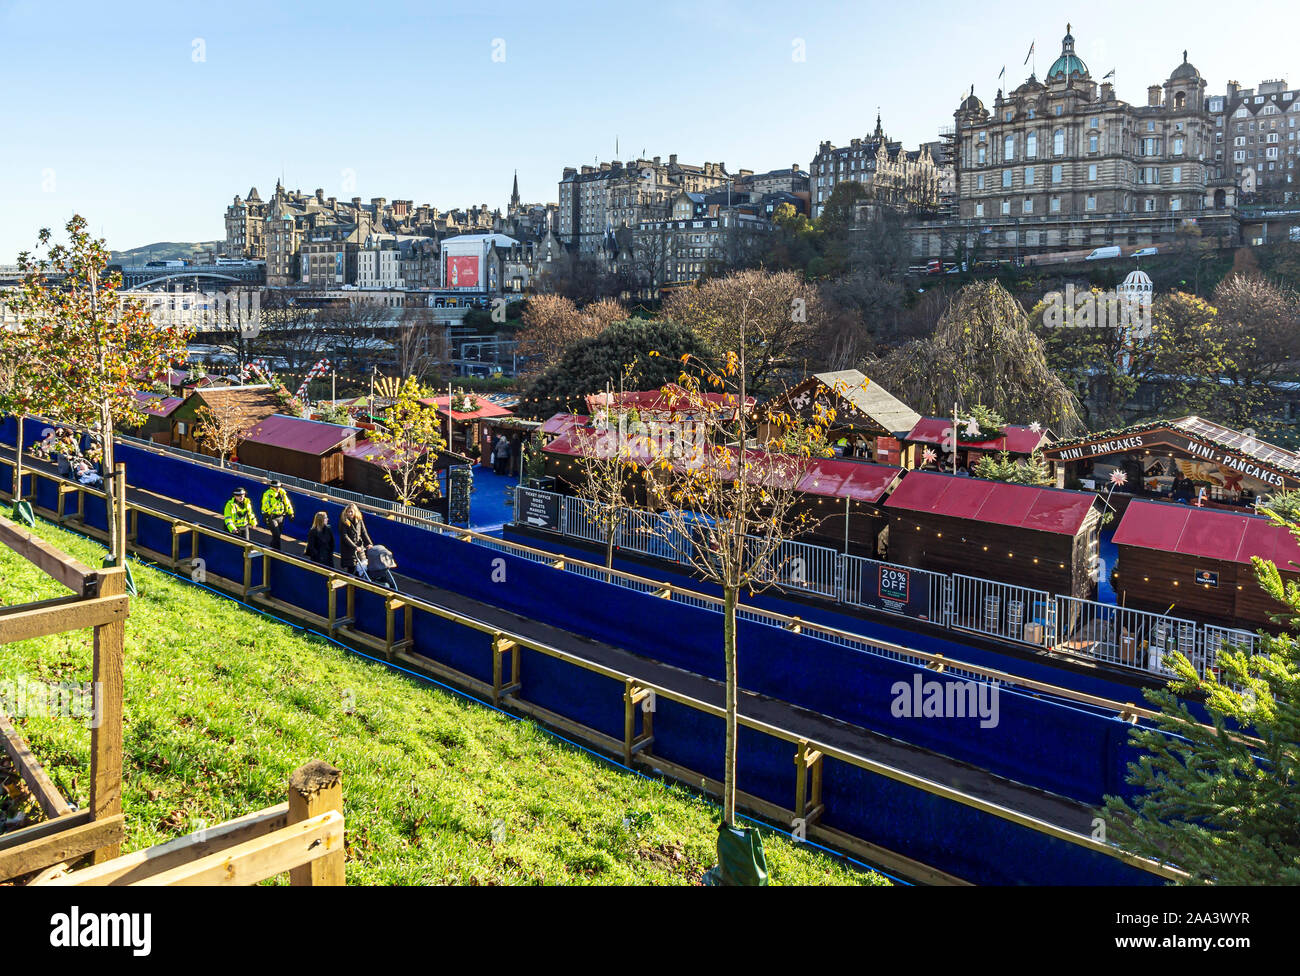 Vue sur partie inférieure d'Édimbourg 2019 Noël au Jardins de Princes Street, Edinburgh Scotland UK avec des événements attractions manèges et marchés Banque D'Images